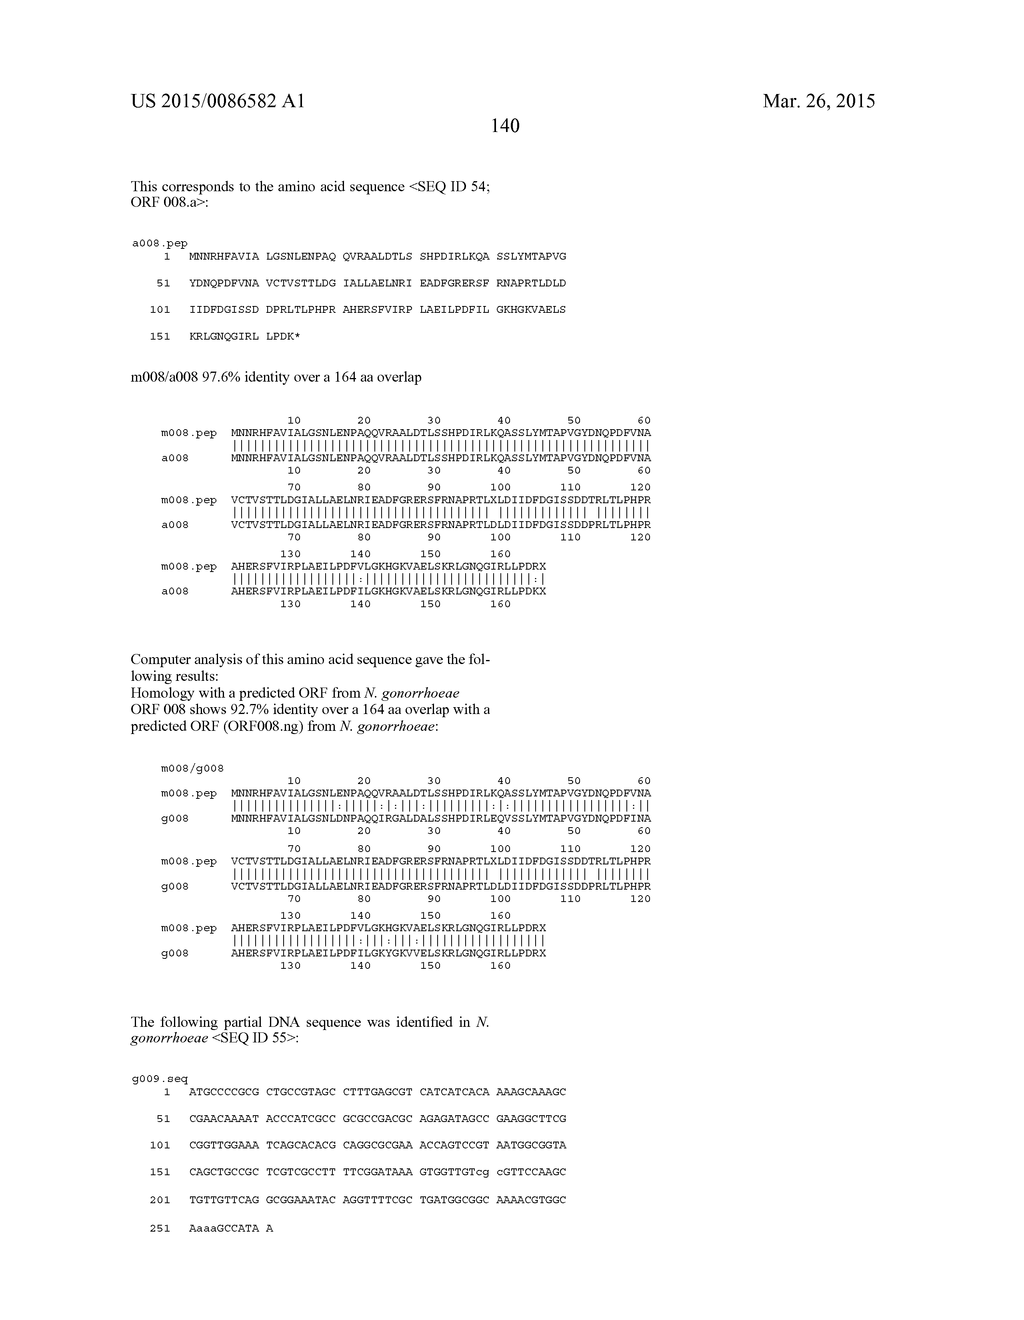 NEISSERIA MENINGITIDIS ANTIGENS AND COMPOSITIONS - diagram, schematic, and image 172